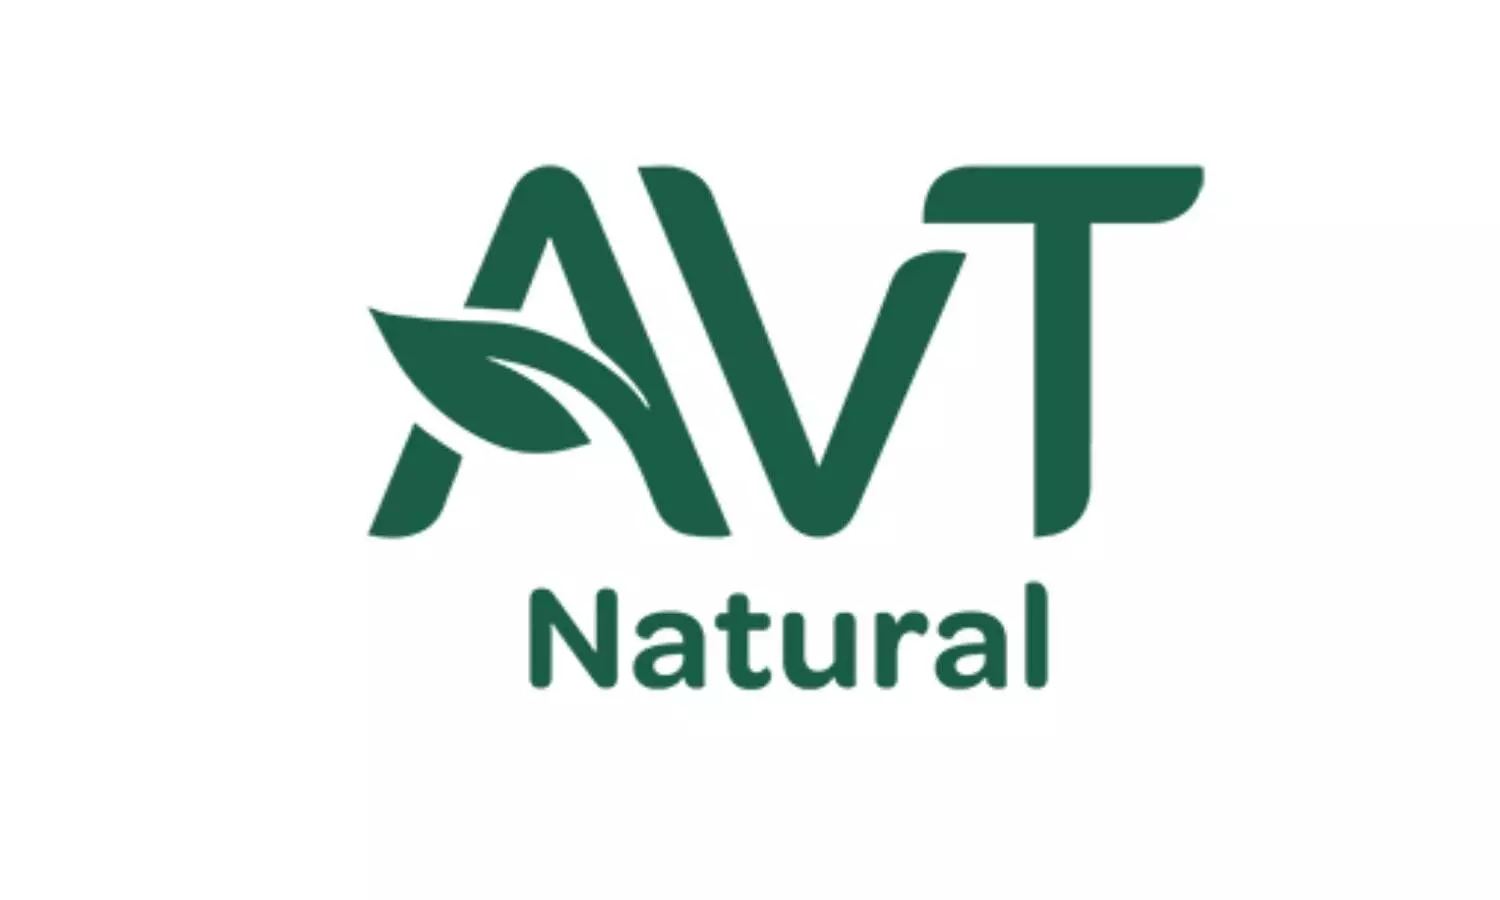 AVT Natural logo